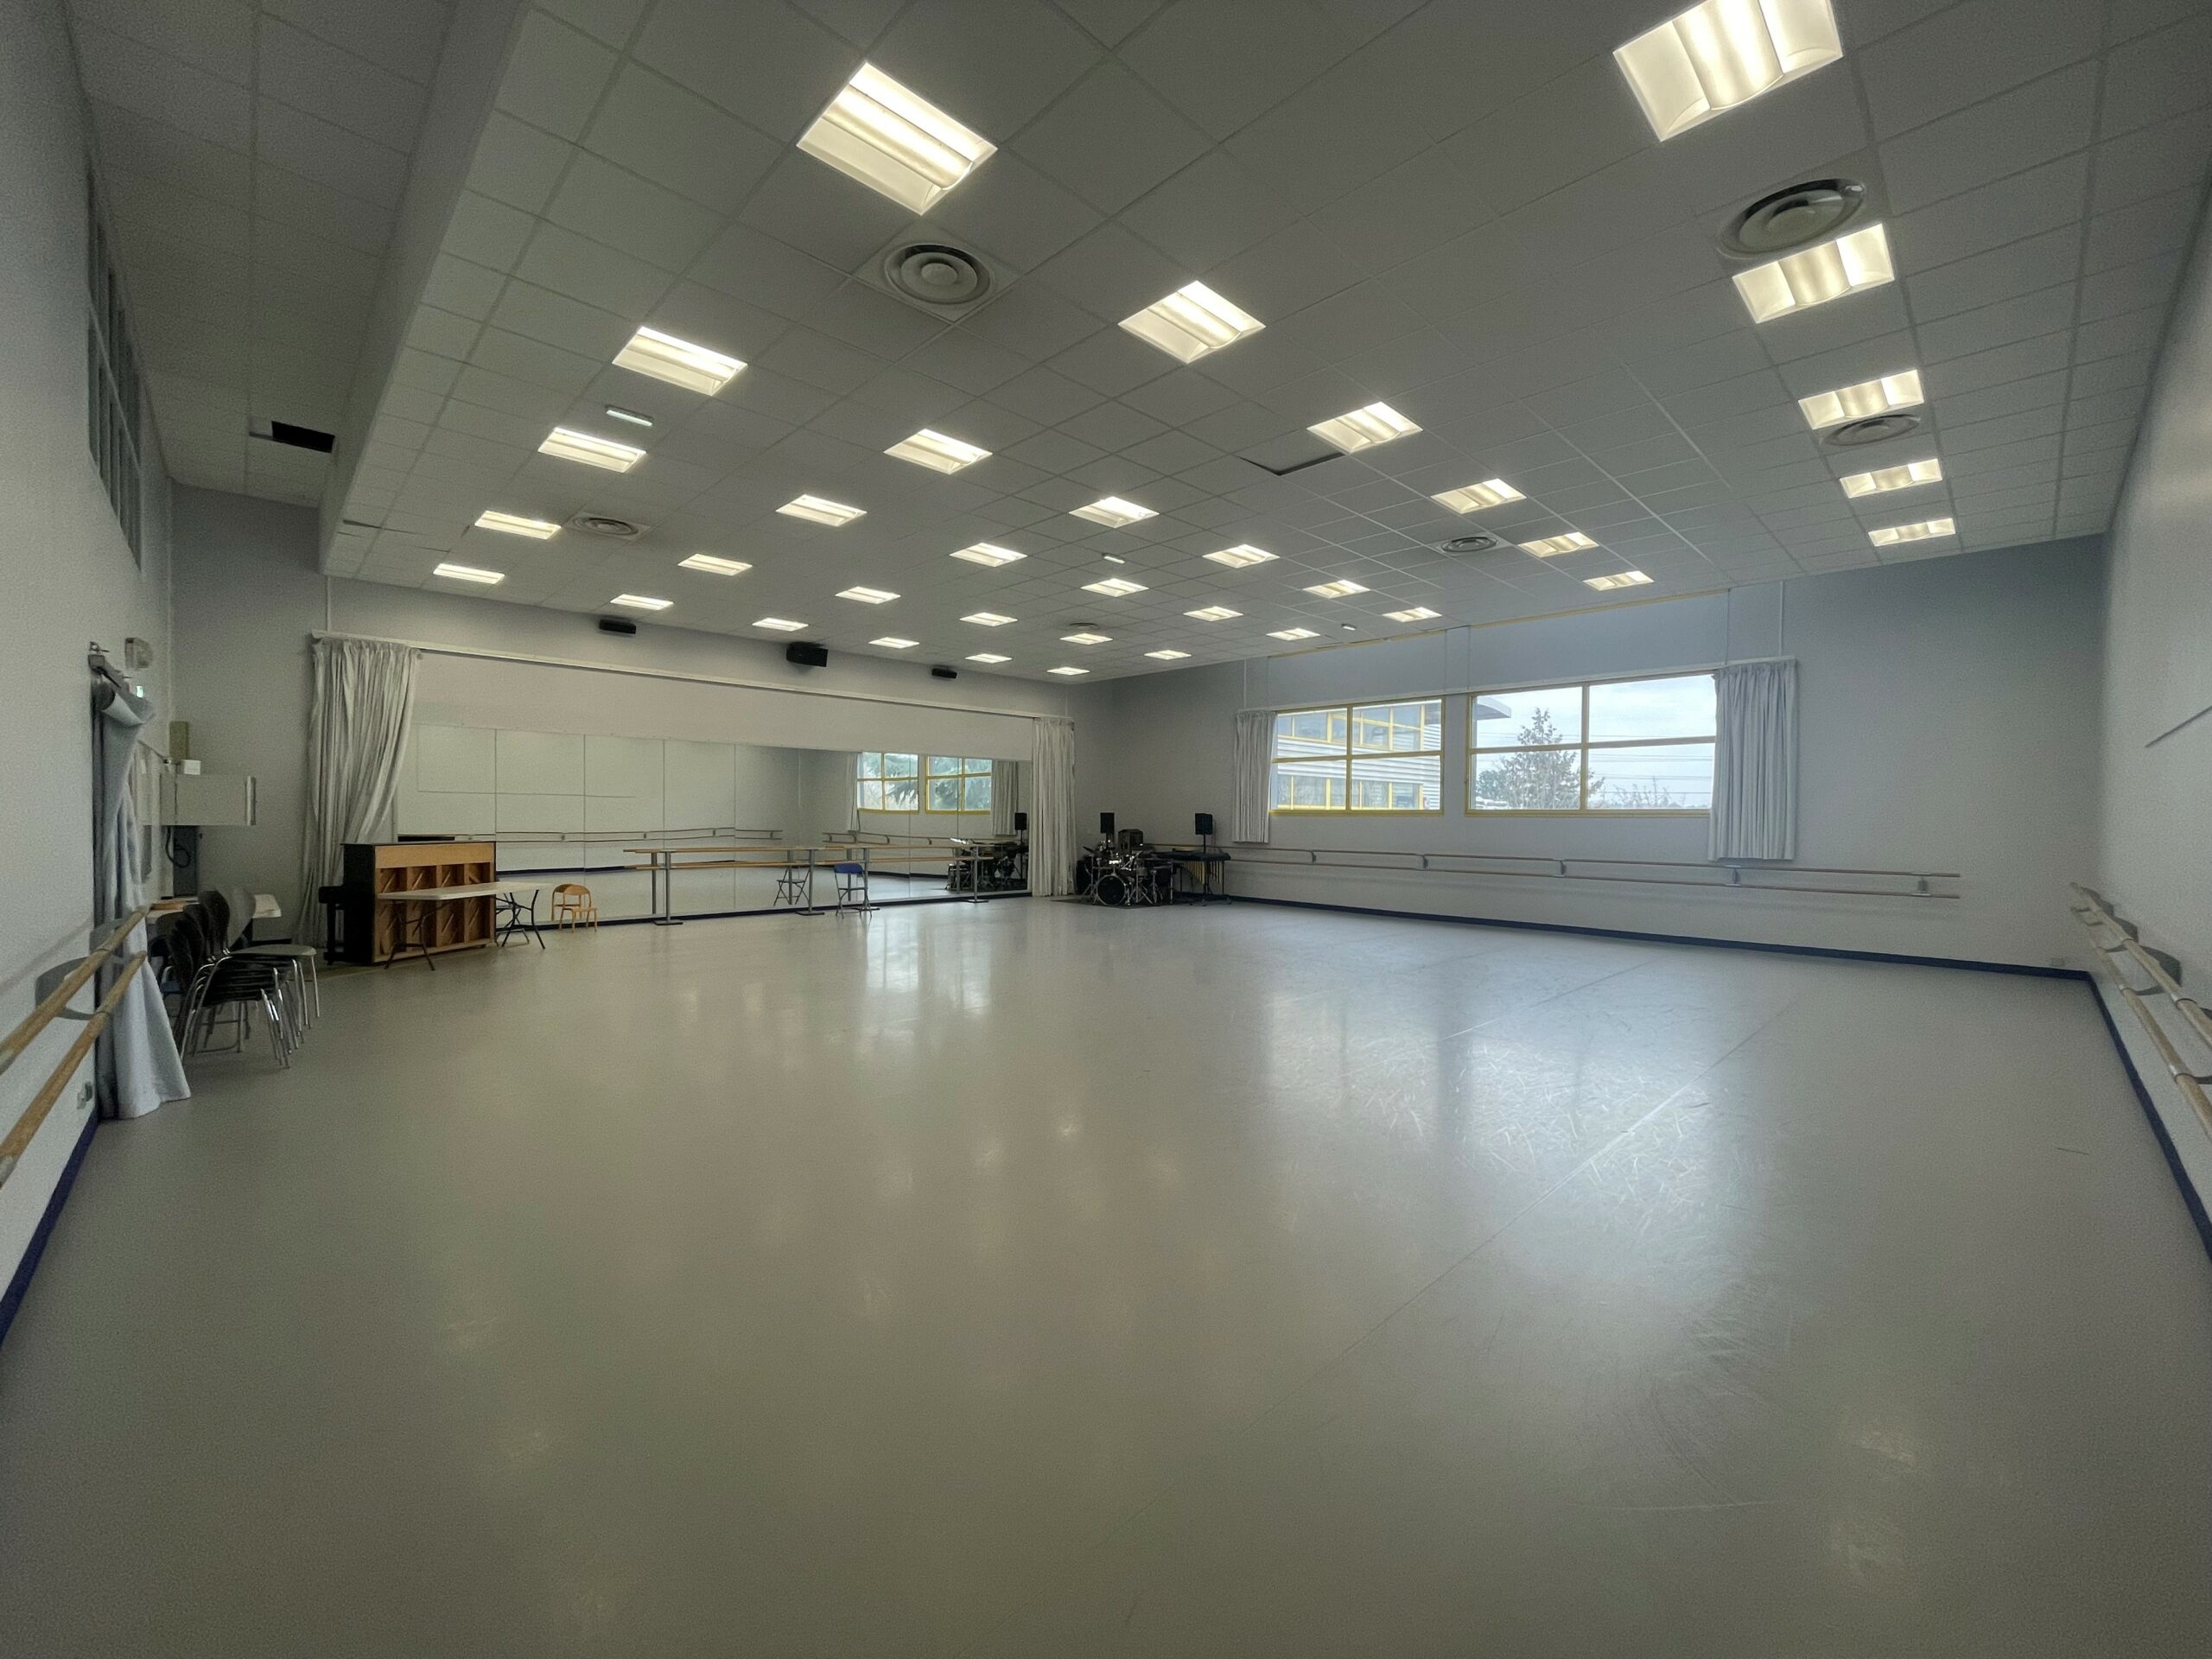 Salle de danse du Complexe sportif Maradas - Joël Motyl